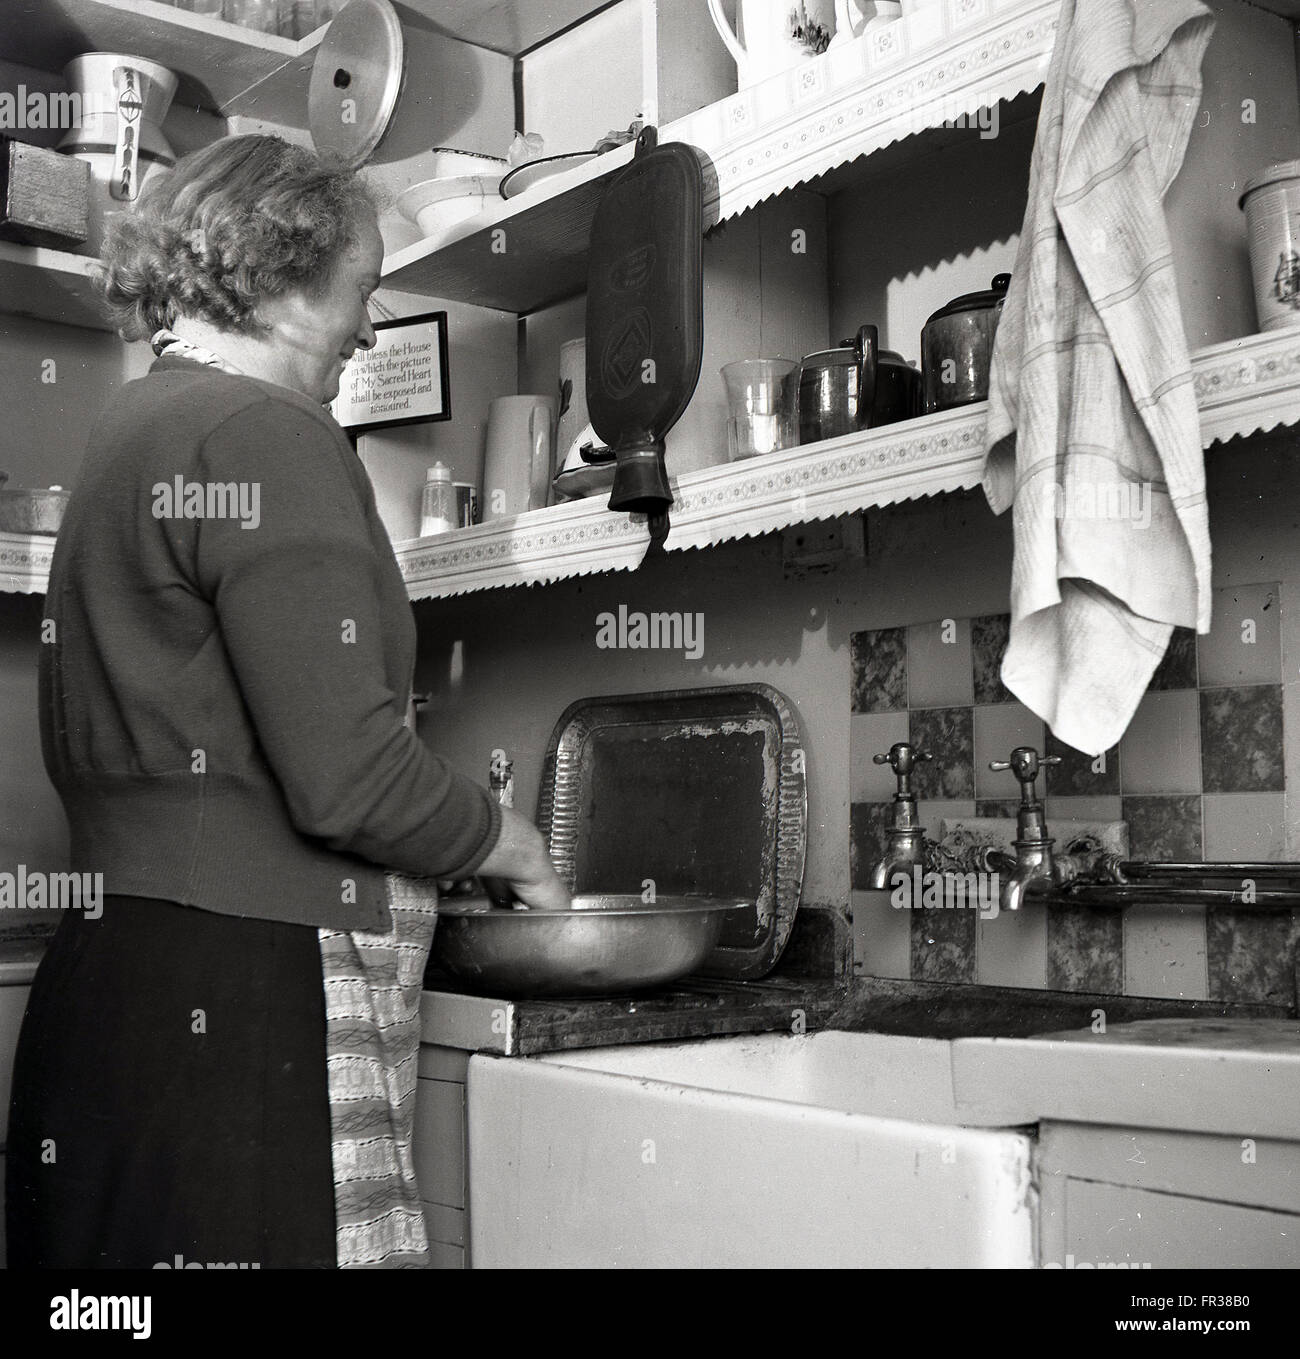 Anni Cinquanta storiche, una donna che indossa un cardigan sopra un grembiule in piedi con le mani in un recipiente stagno preparare cibi, accanto a un dissipatore di maggiordomo nella piccola cucina. Foto Stock